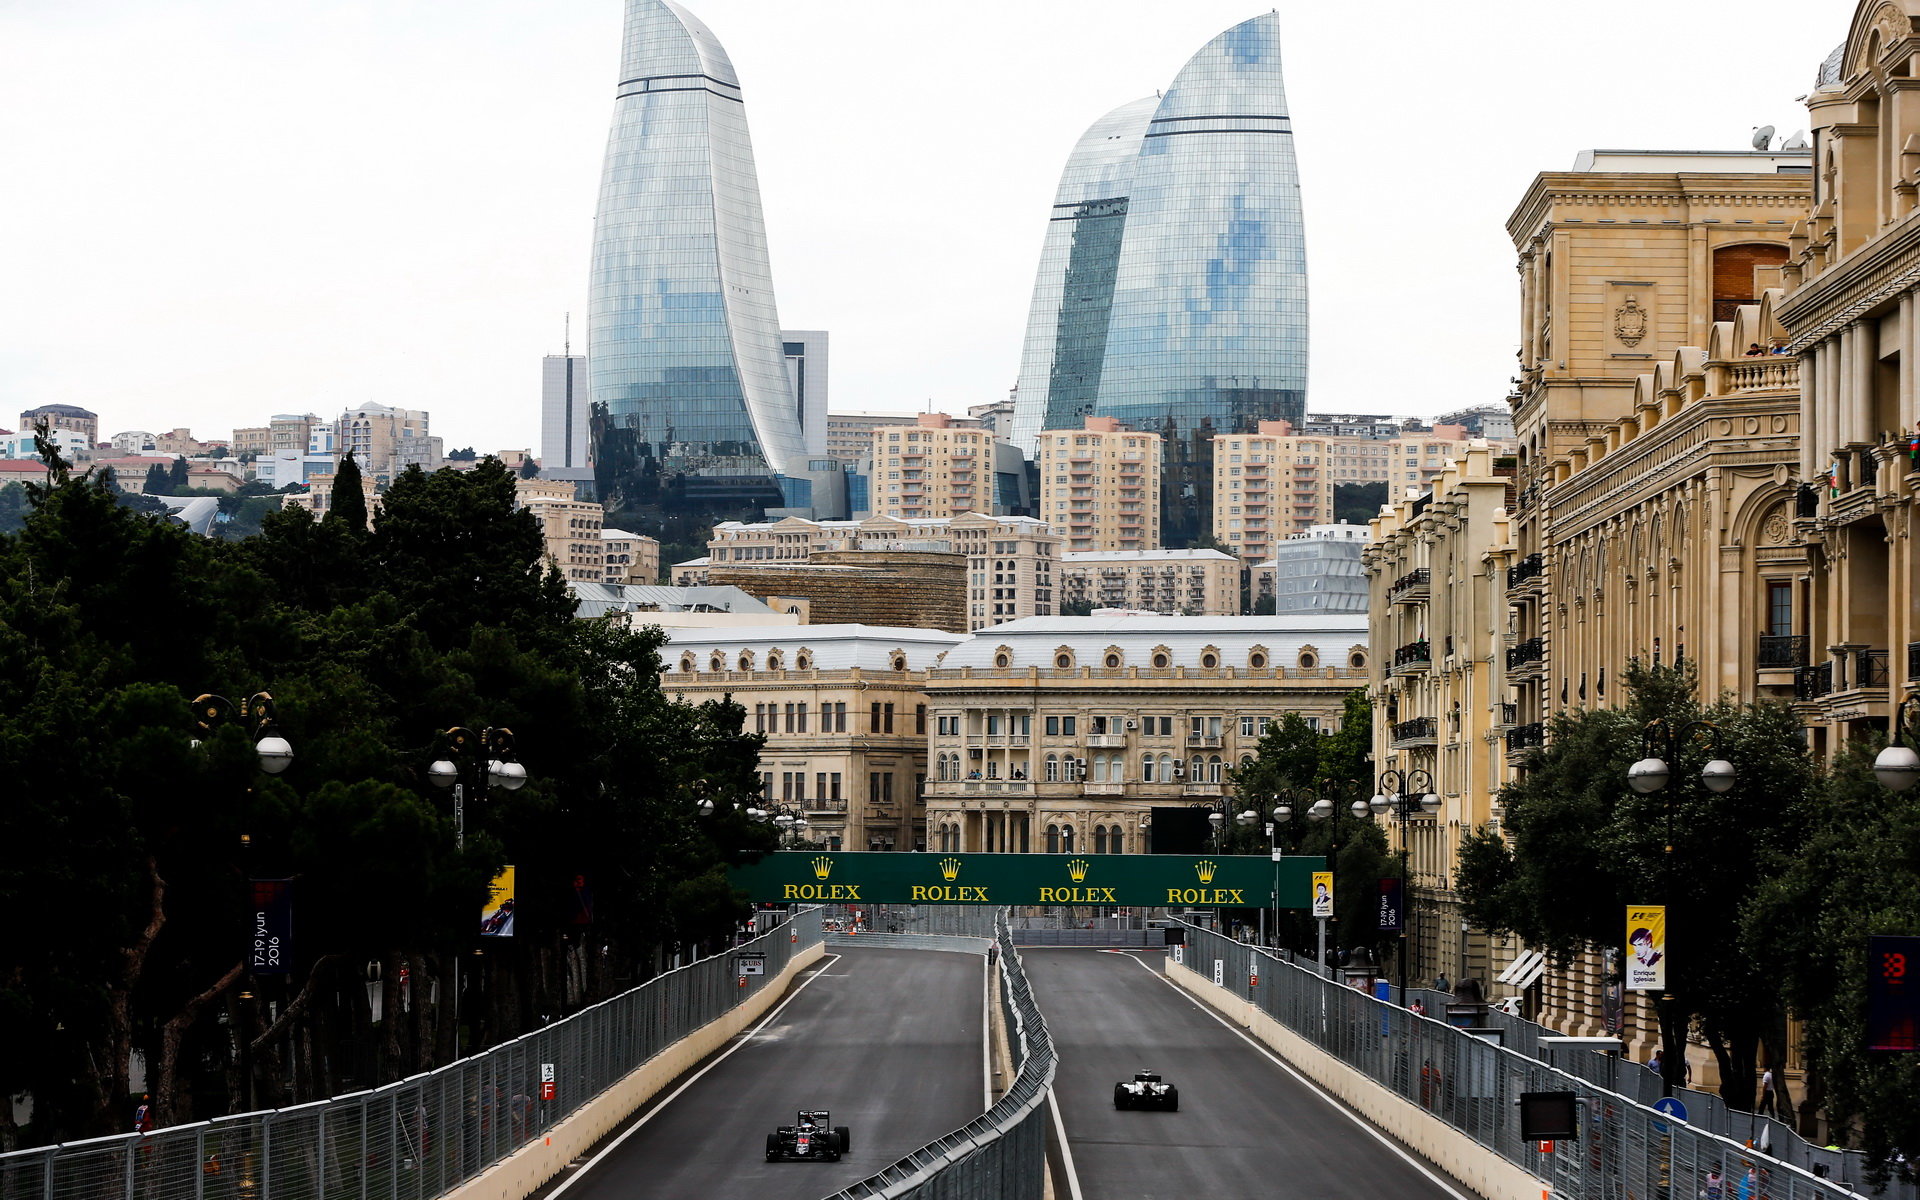 Kvalifikace v Baku